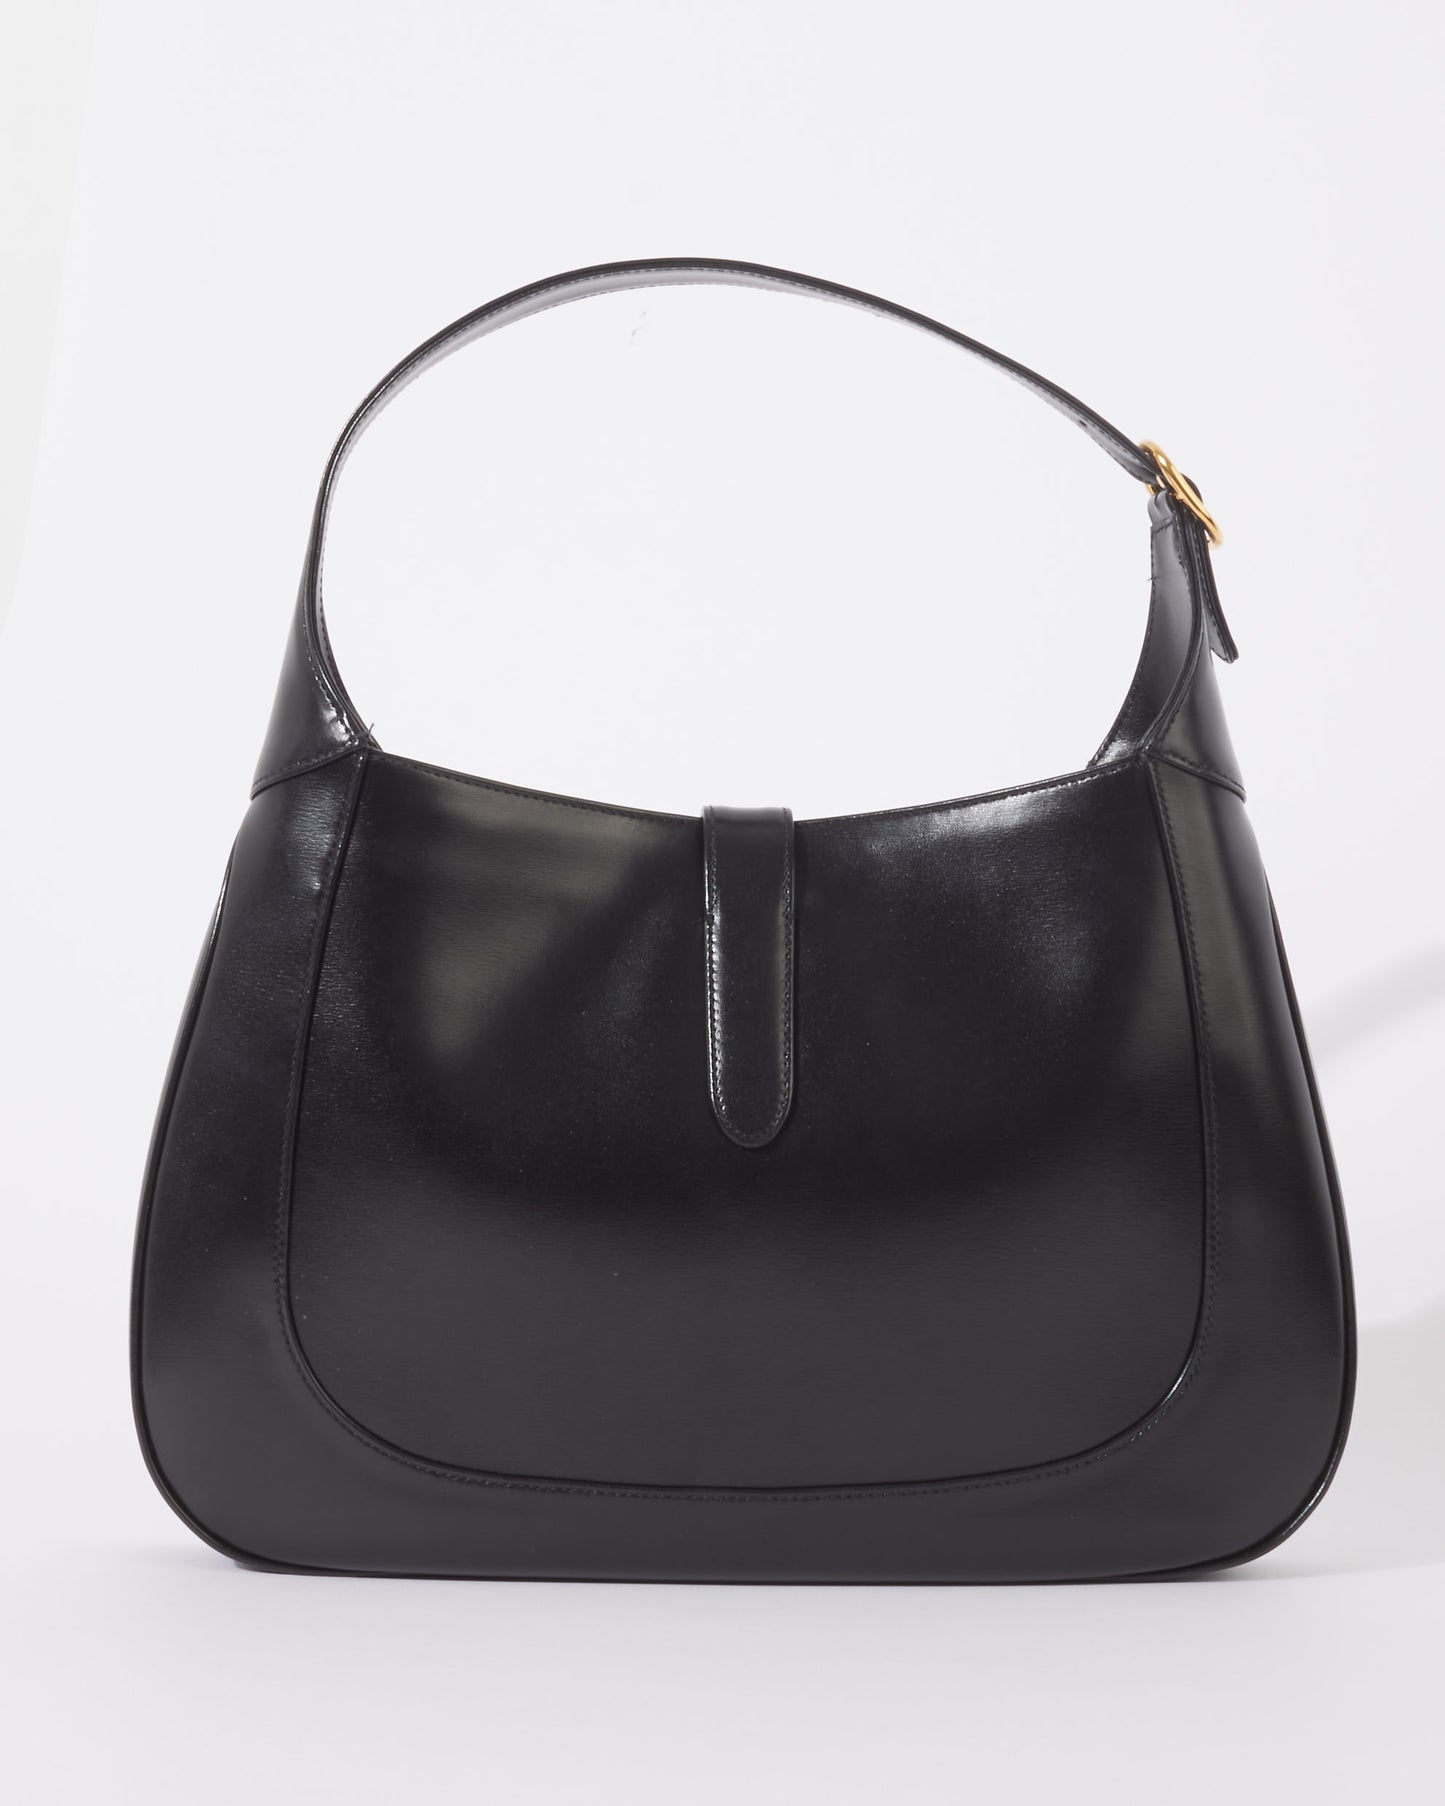 Gucci Black Leather Medium Jackie 1961 Hobo Shoulder Bag